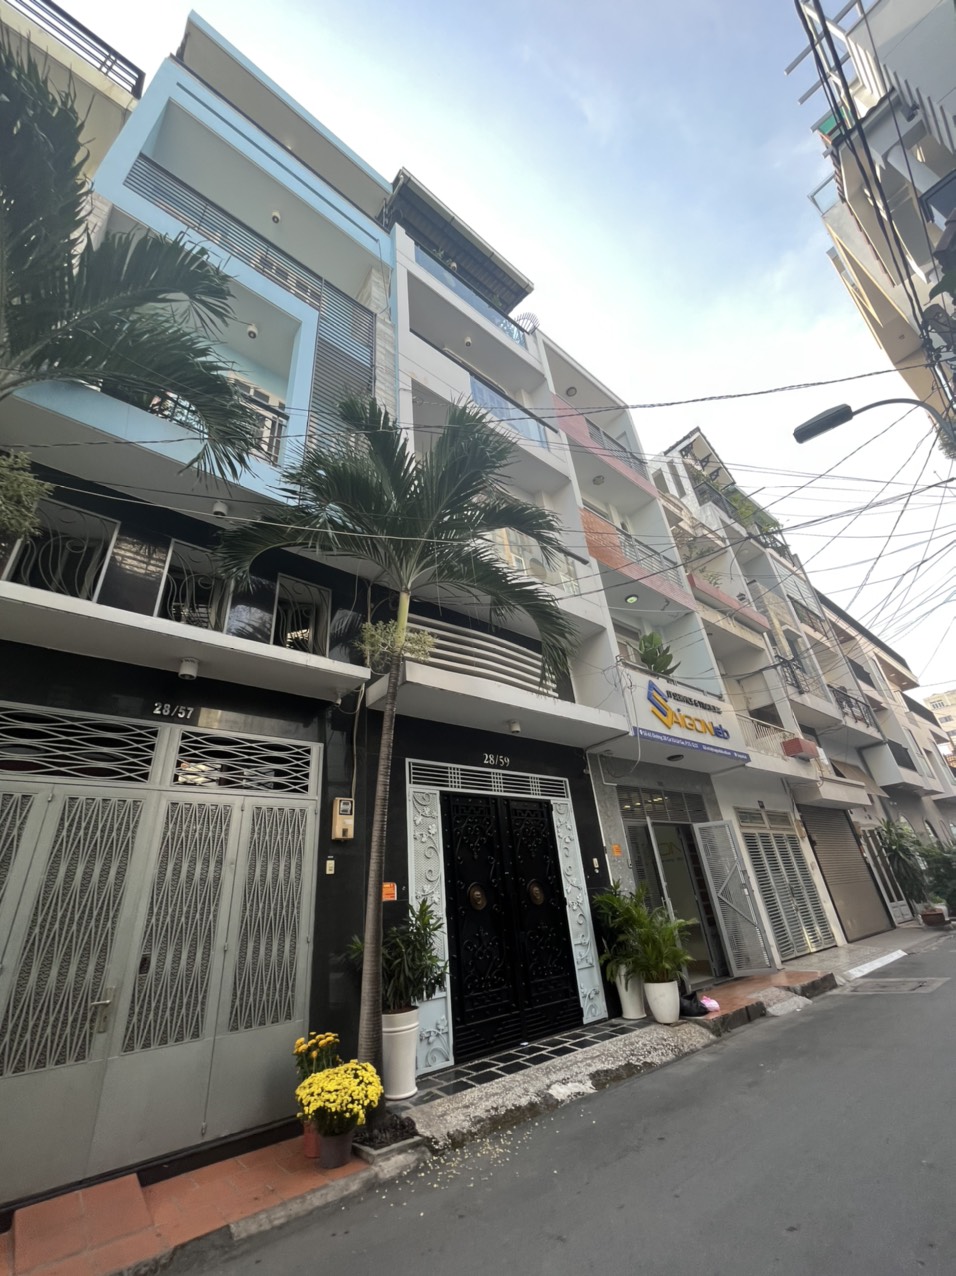 7m ra mặt tiền + XH đậu trong nhà, Nguyễn Thị Minh Khai, Đa Kao, Q1 - DT 57m2 - 5 tầng, chỉ 17,5 tỷ